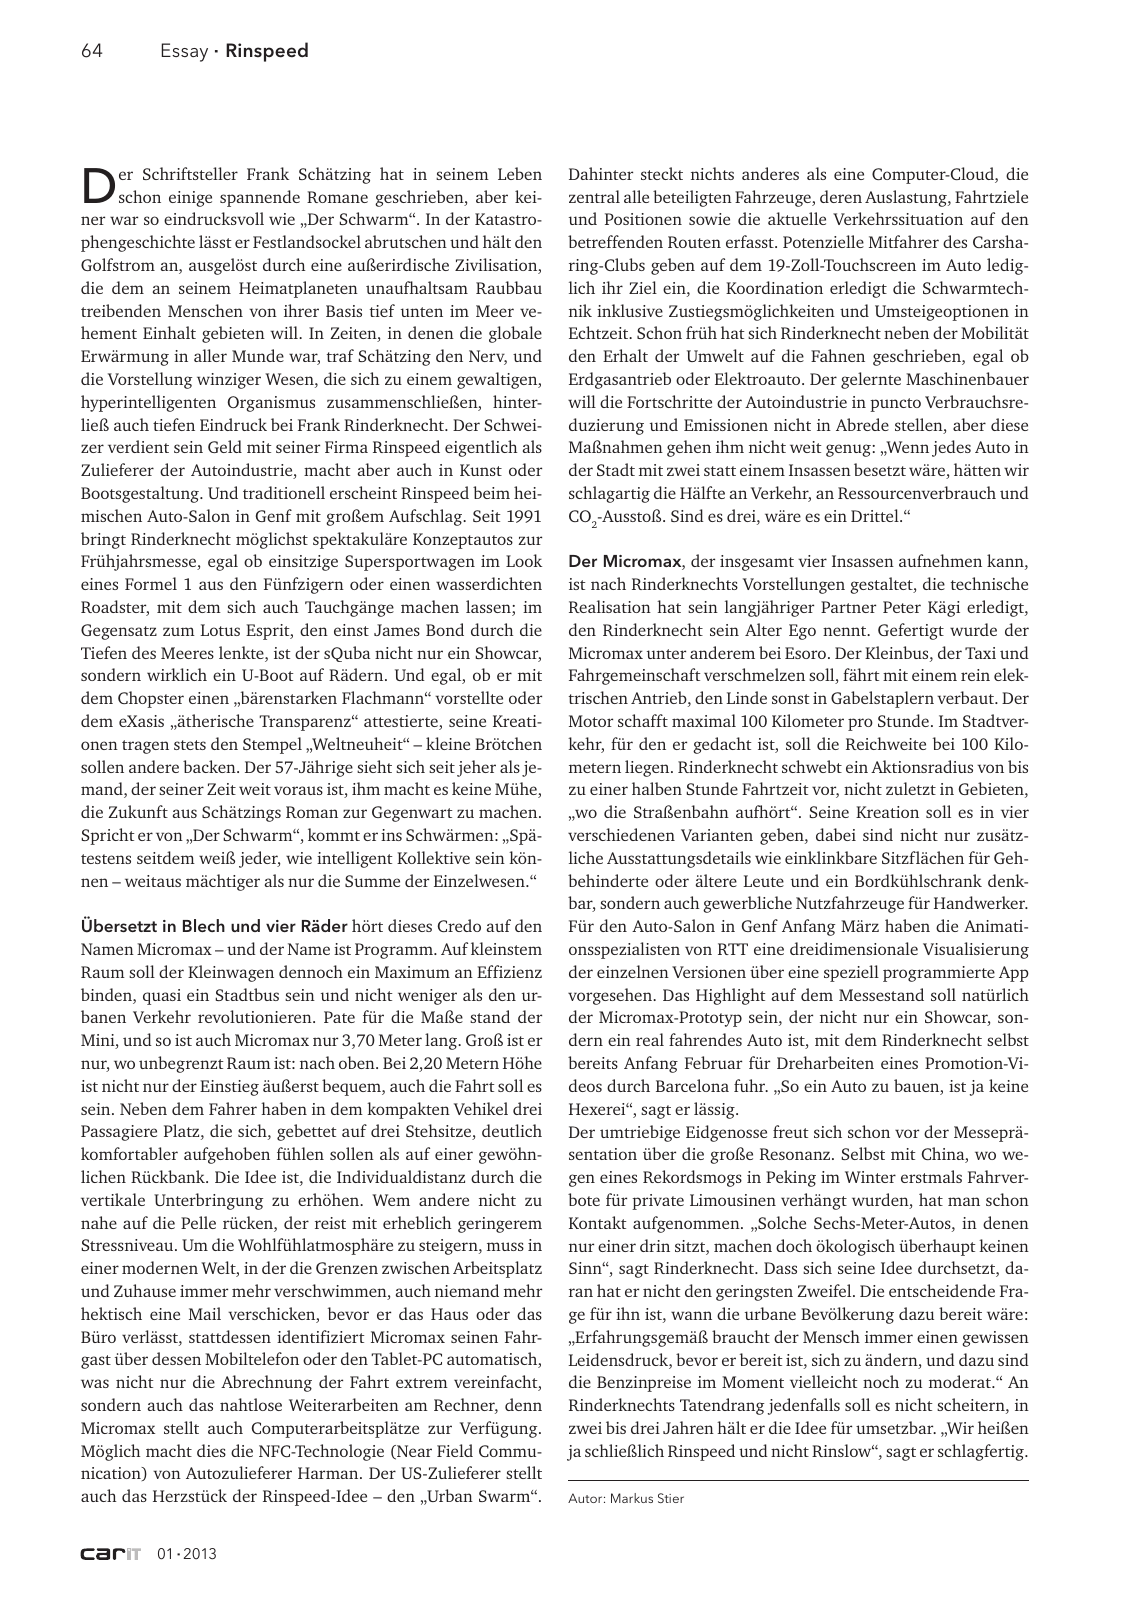 Vorschau carIT 01 2013 Seite 64